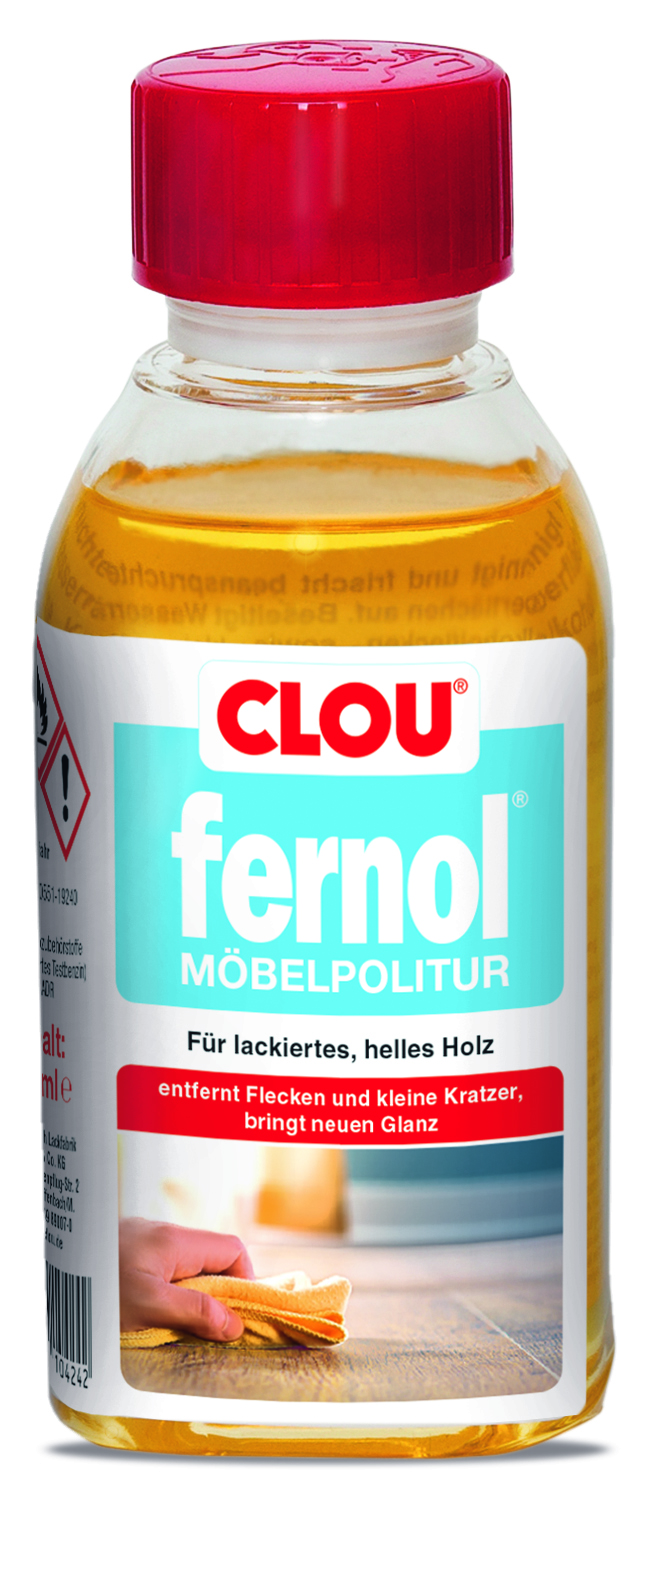 CLOU fernol Möbelpolitur 150 ml, Hell